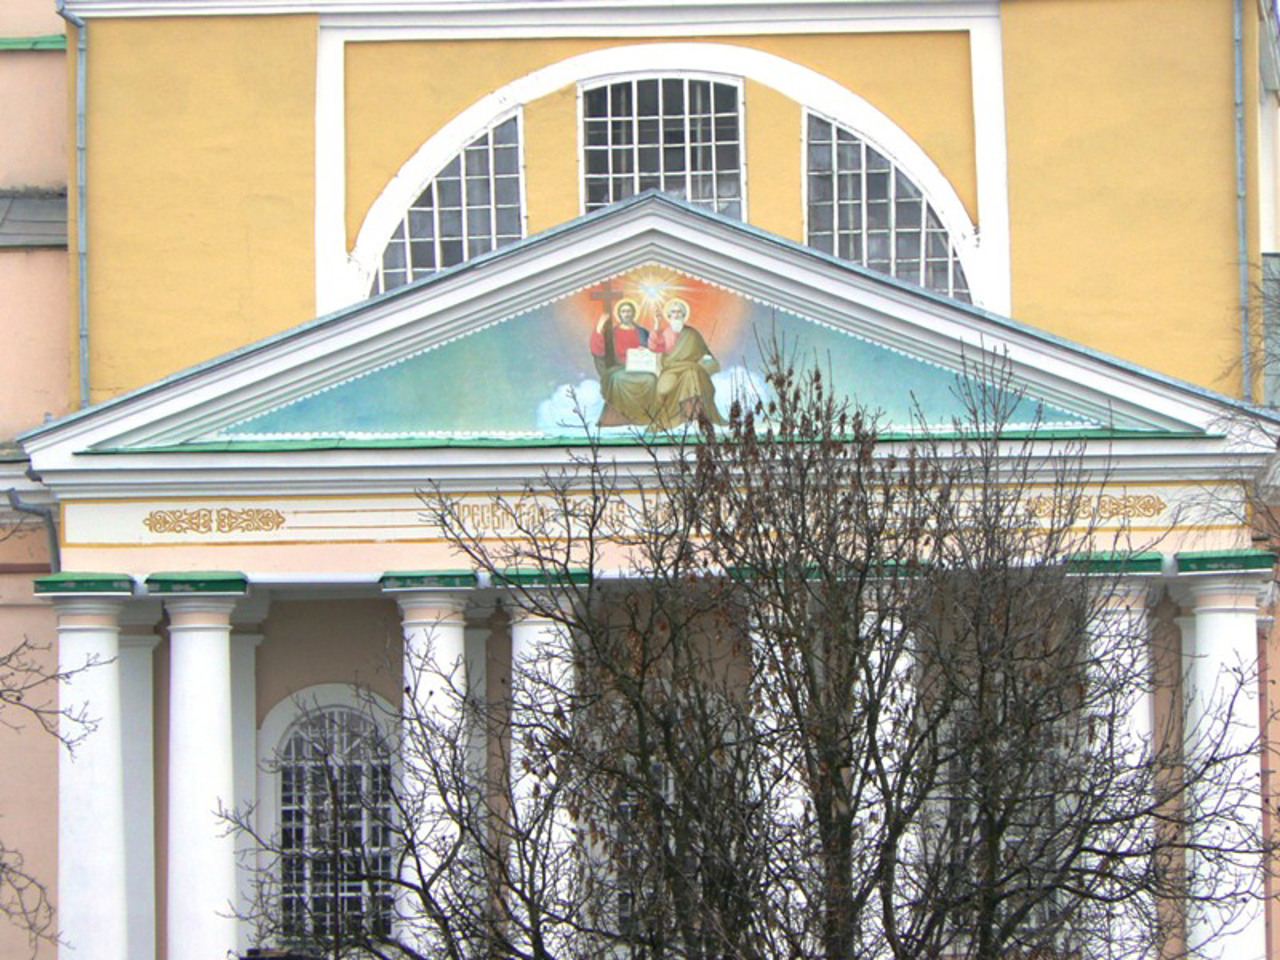 Николаевская церковь, Корец